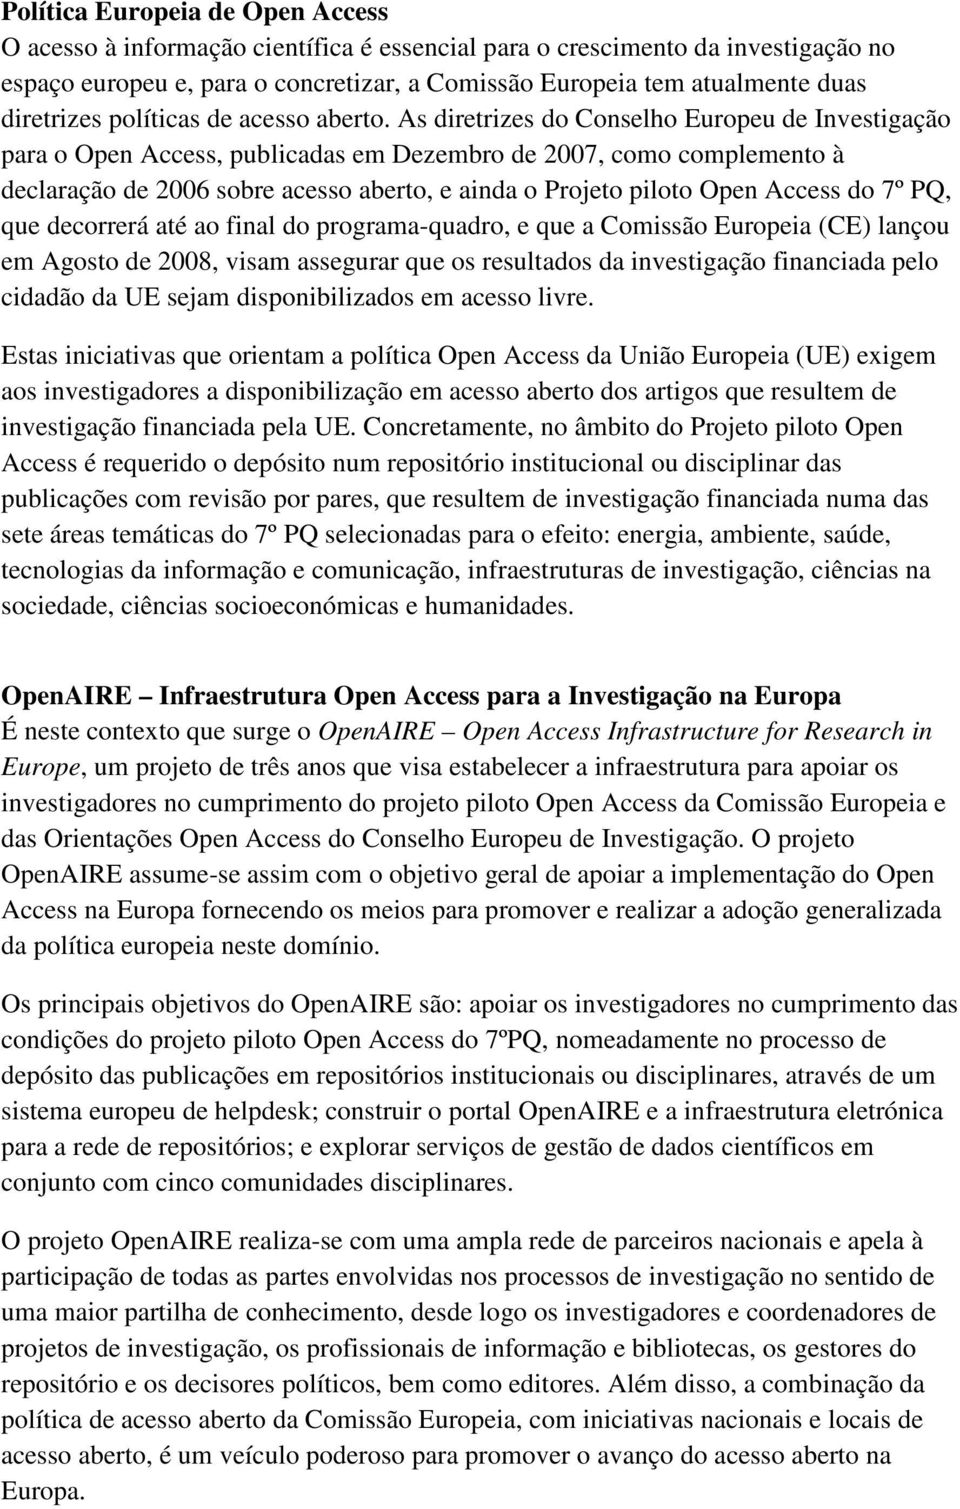 As diretrizes do Conselho Europeu de Investigação para o Open Access, publicadas em Dezembro de 2007, como complemento à declaração de 2006 sobre acesso aberto, e ainda o Projeto piloto Open Access